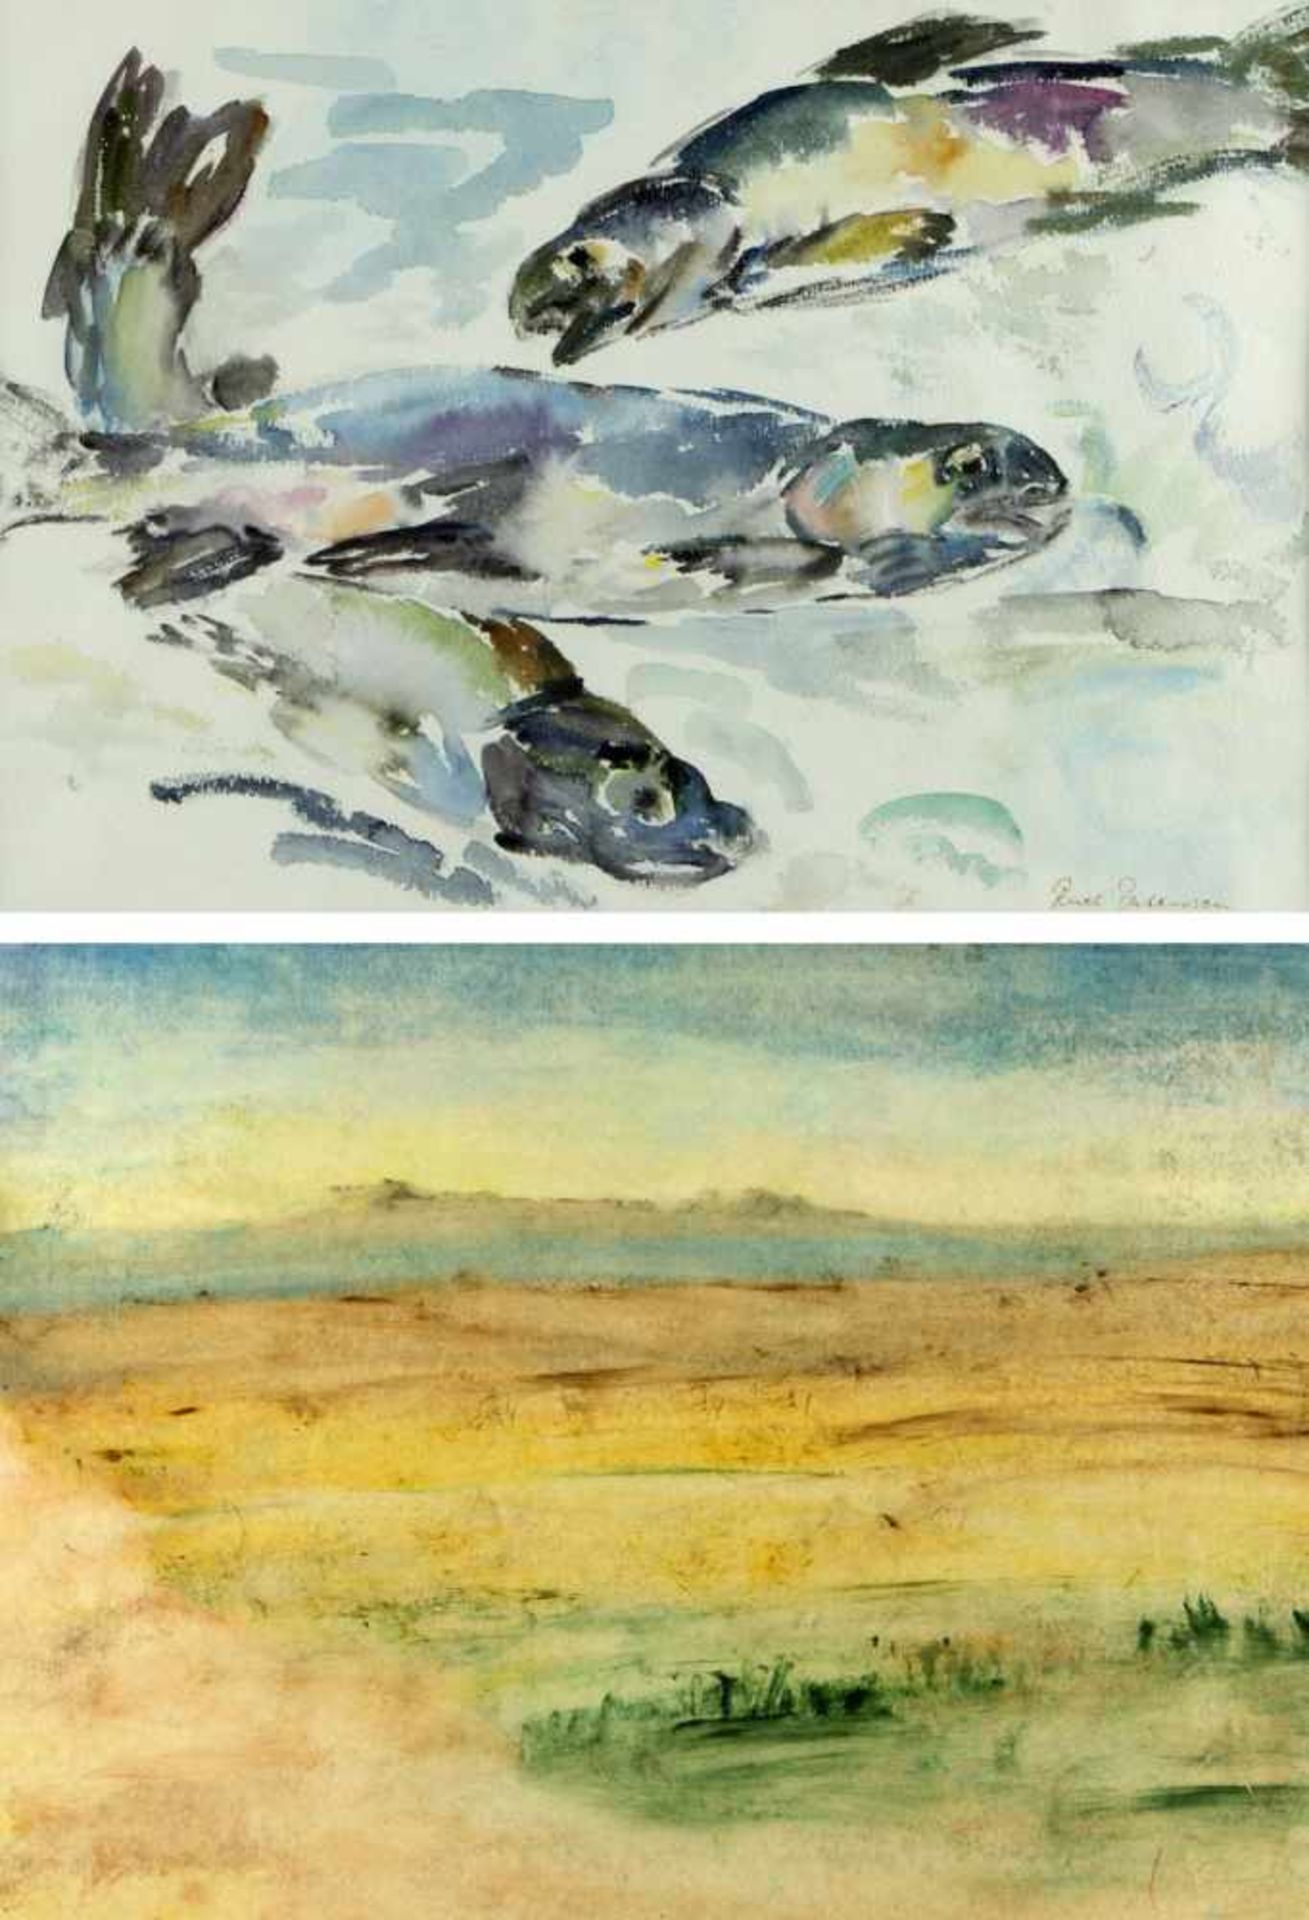 Schmelz, Josef. Putensen, RuthKarge Landschaft. Fische. 2 Aquarelle. Sign. Bis 47 x 62,5 cm.